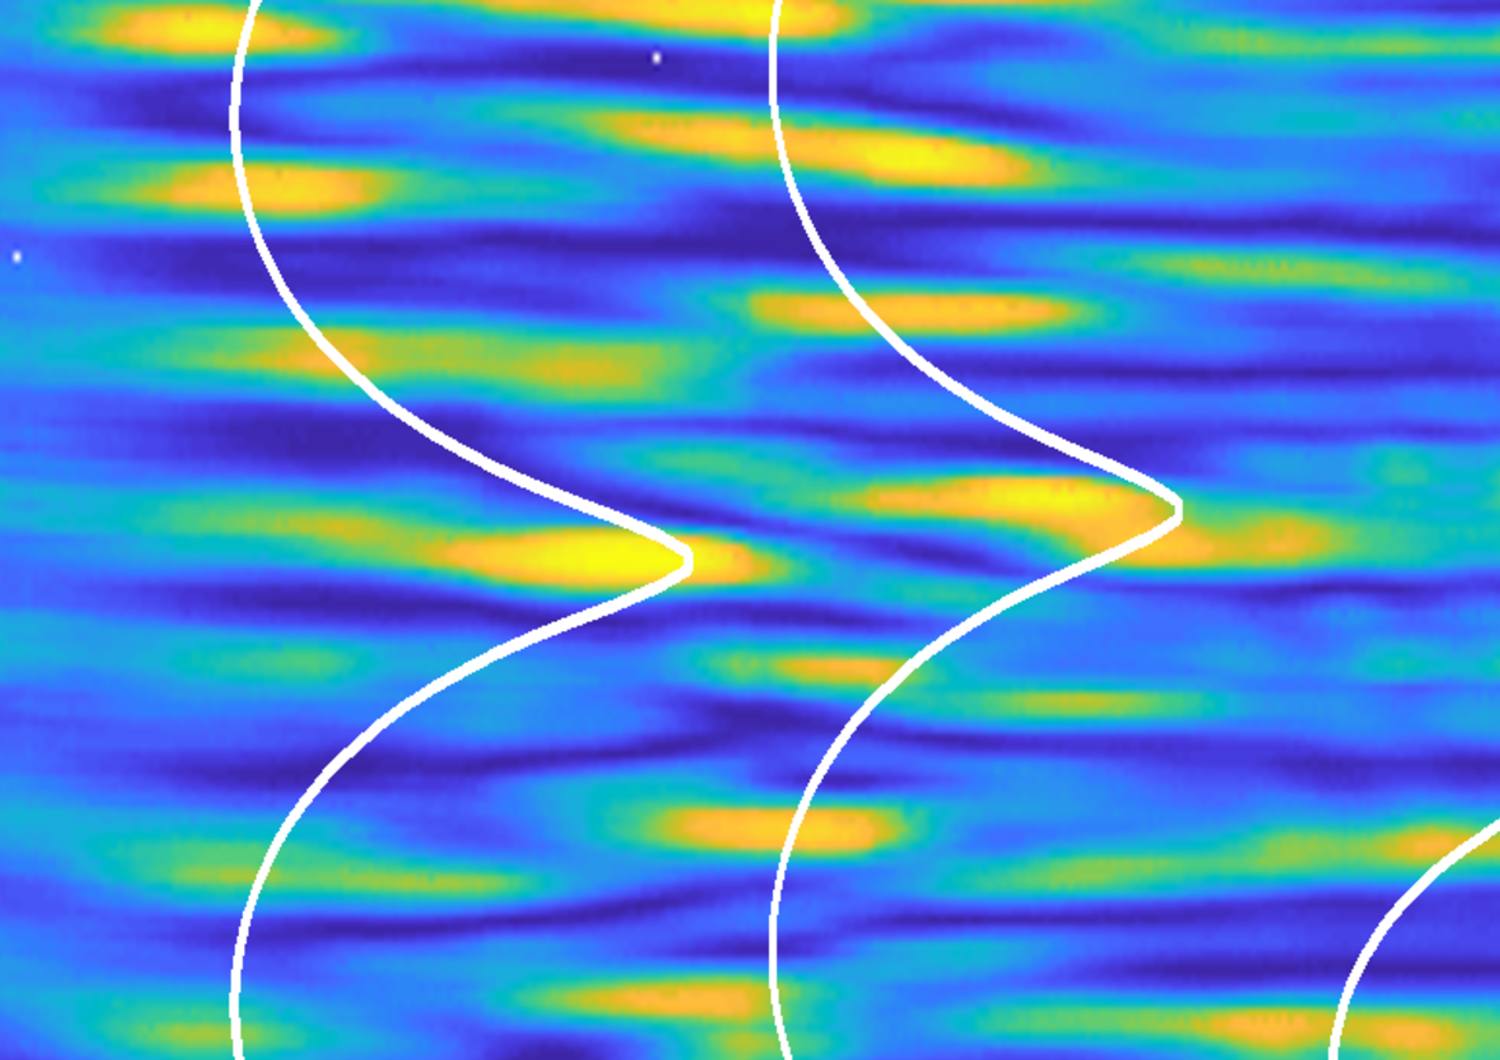 Ricorrenza di Fermi-Pasta-Ulam come osservata sperimentalmente nella distribuzione spaziale della luce. L&rsquo;onda ottica nonlineare assume un profilo caratteristico che svanisce per poi ripetersi durante la progazione (da sinistra a destra).&nbsp; Le linee curve indicano il comportamento teoricamente predetto per una ricorrenza esatta di questo tipo.